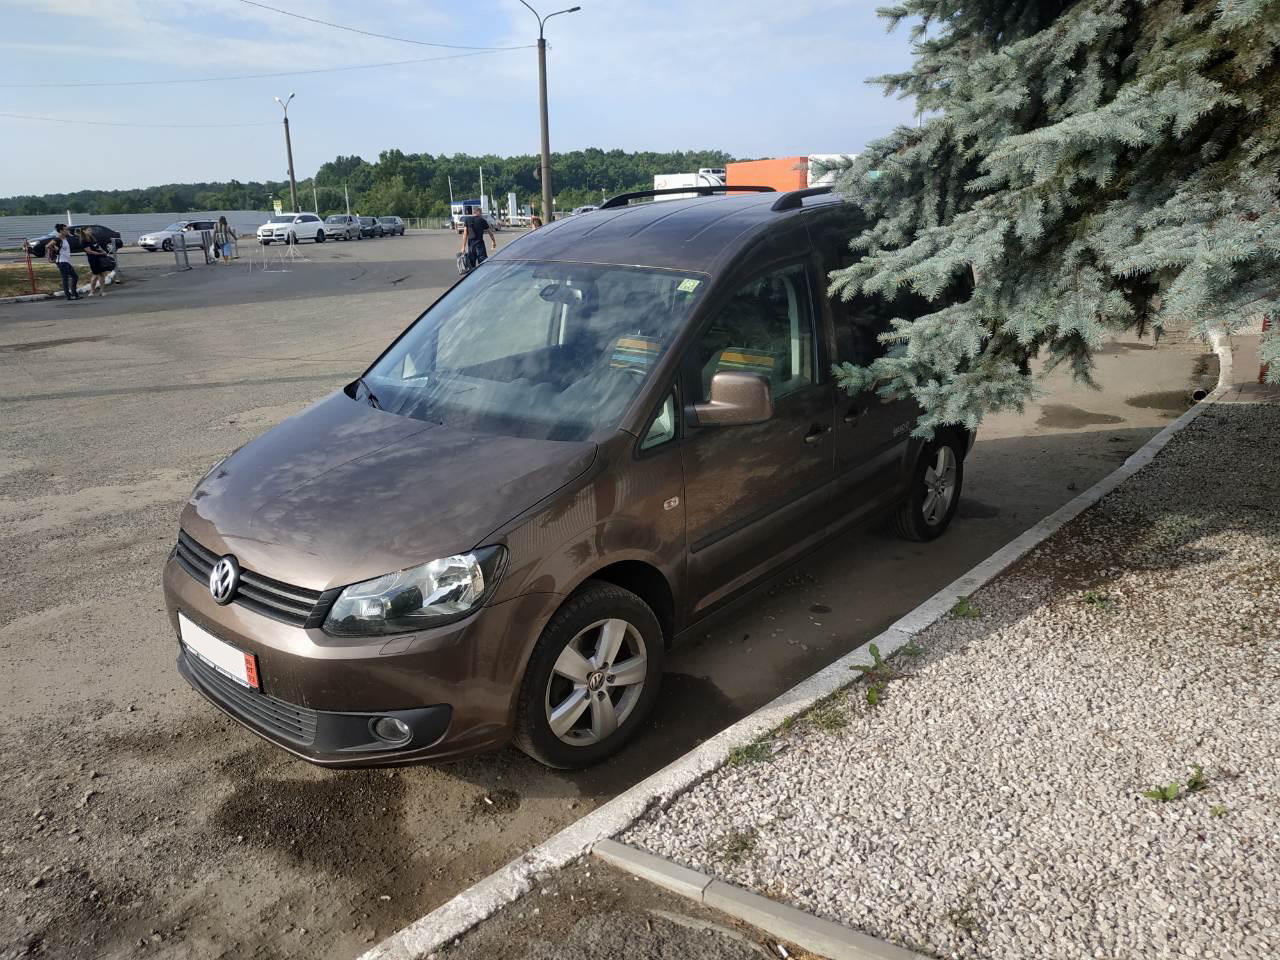 Українець намагався імпортувати на Закарпатті Volkswagen Caddy, занизивши його вартість удвічі (ФОТО)